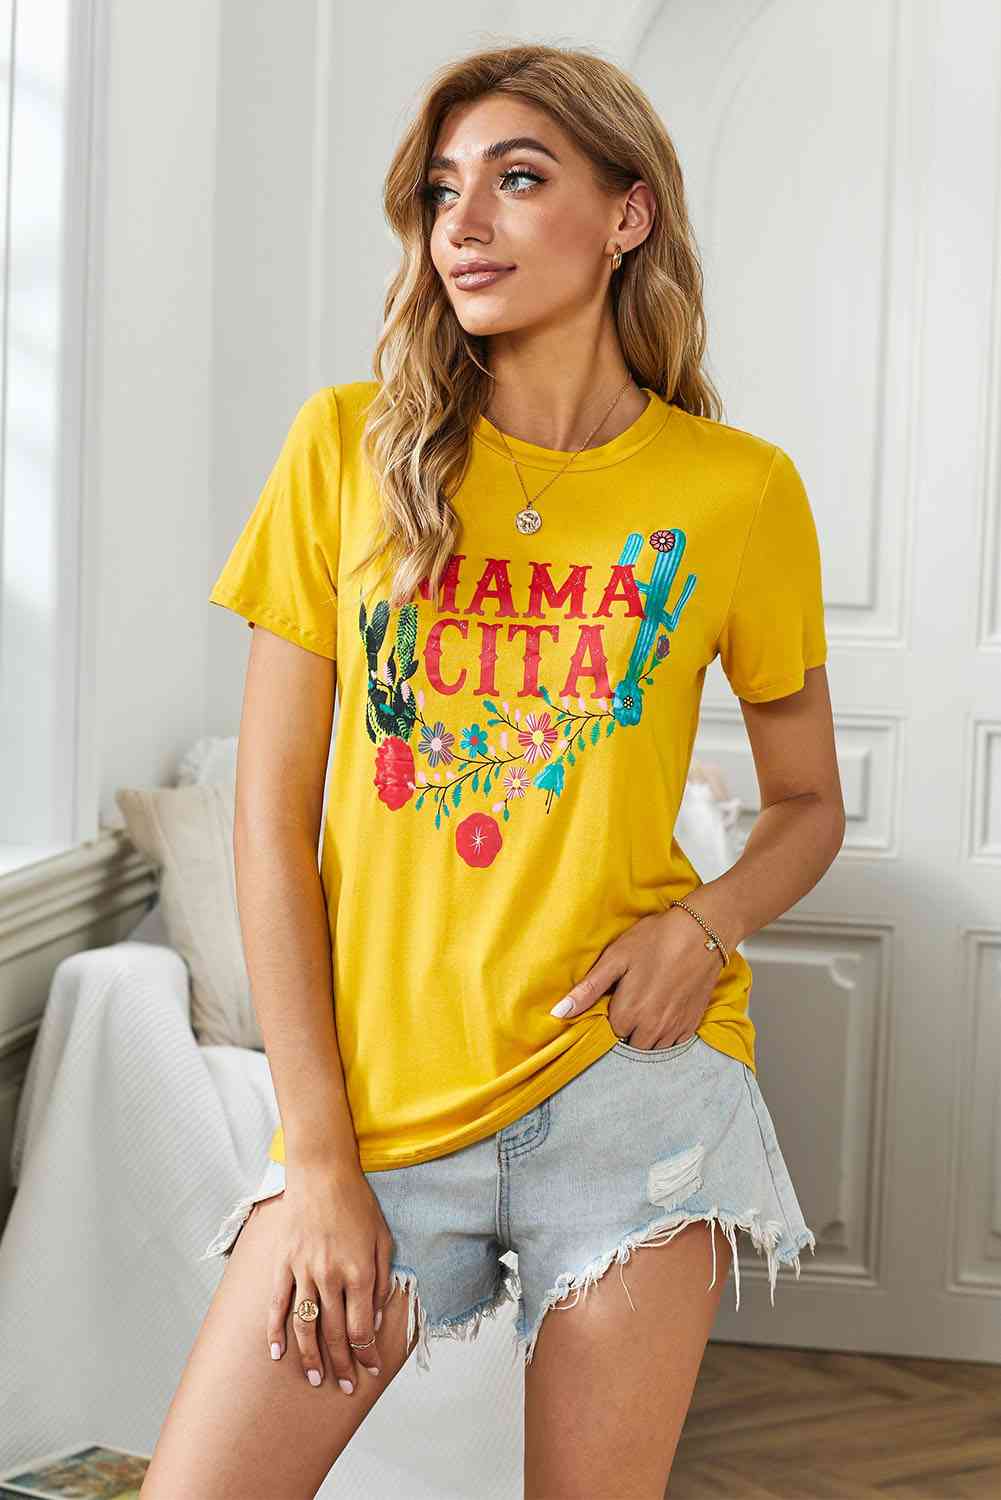 Mamacita Graphic T-Shirt